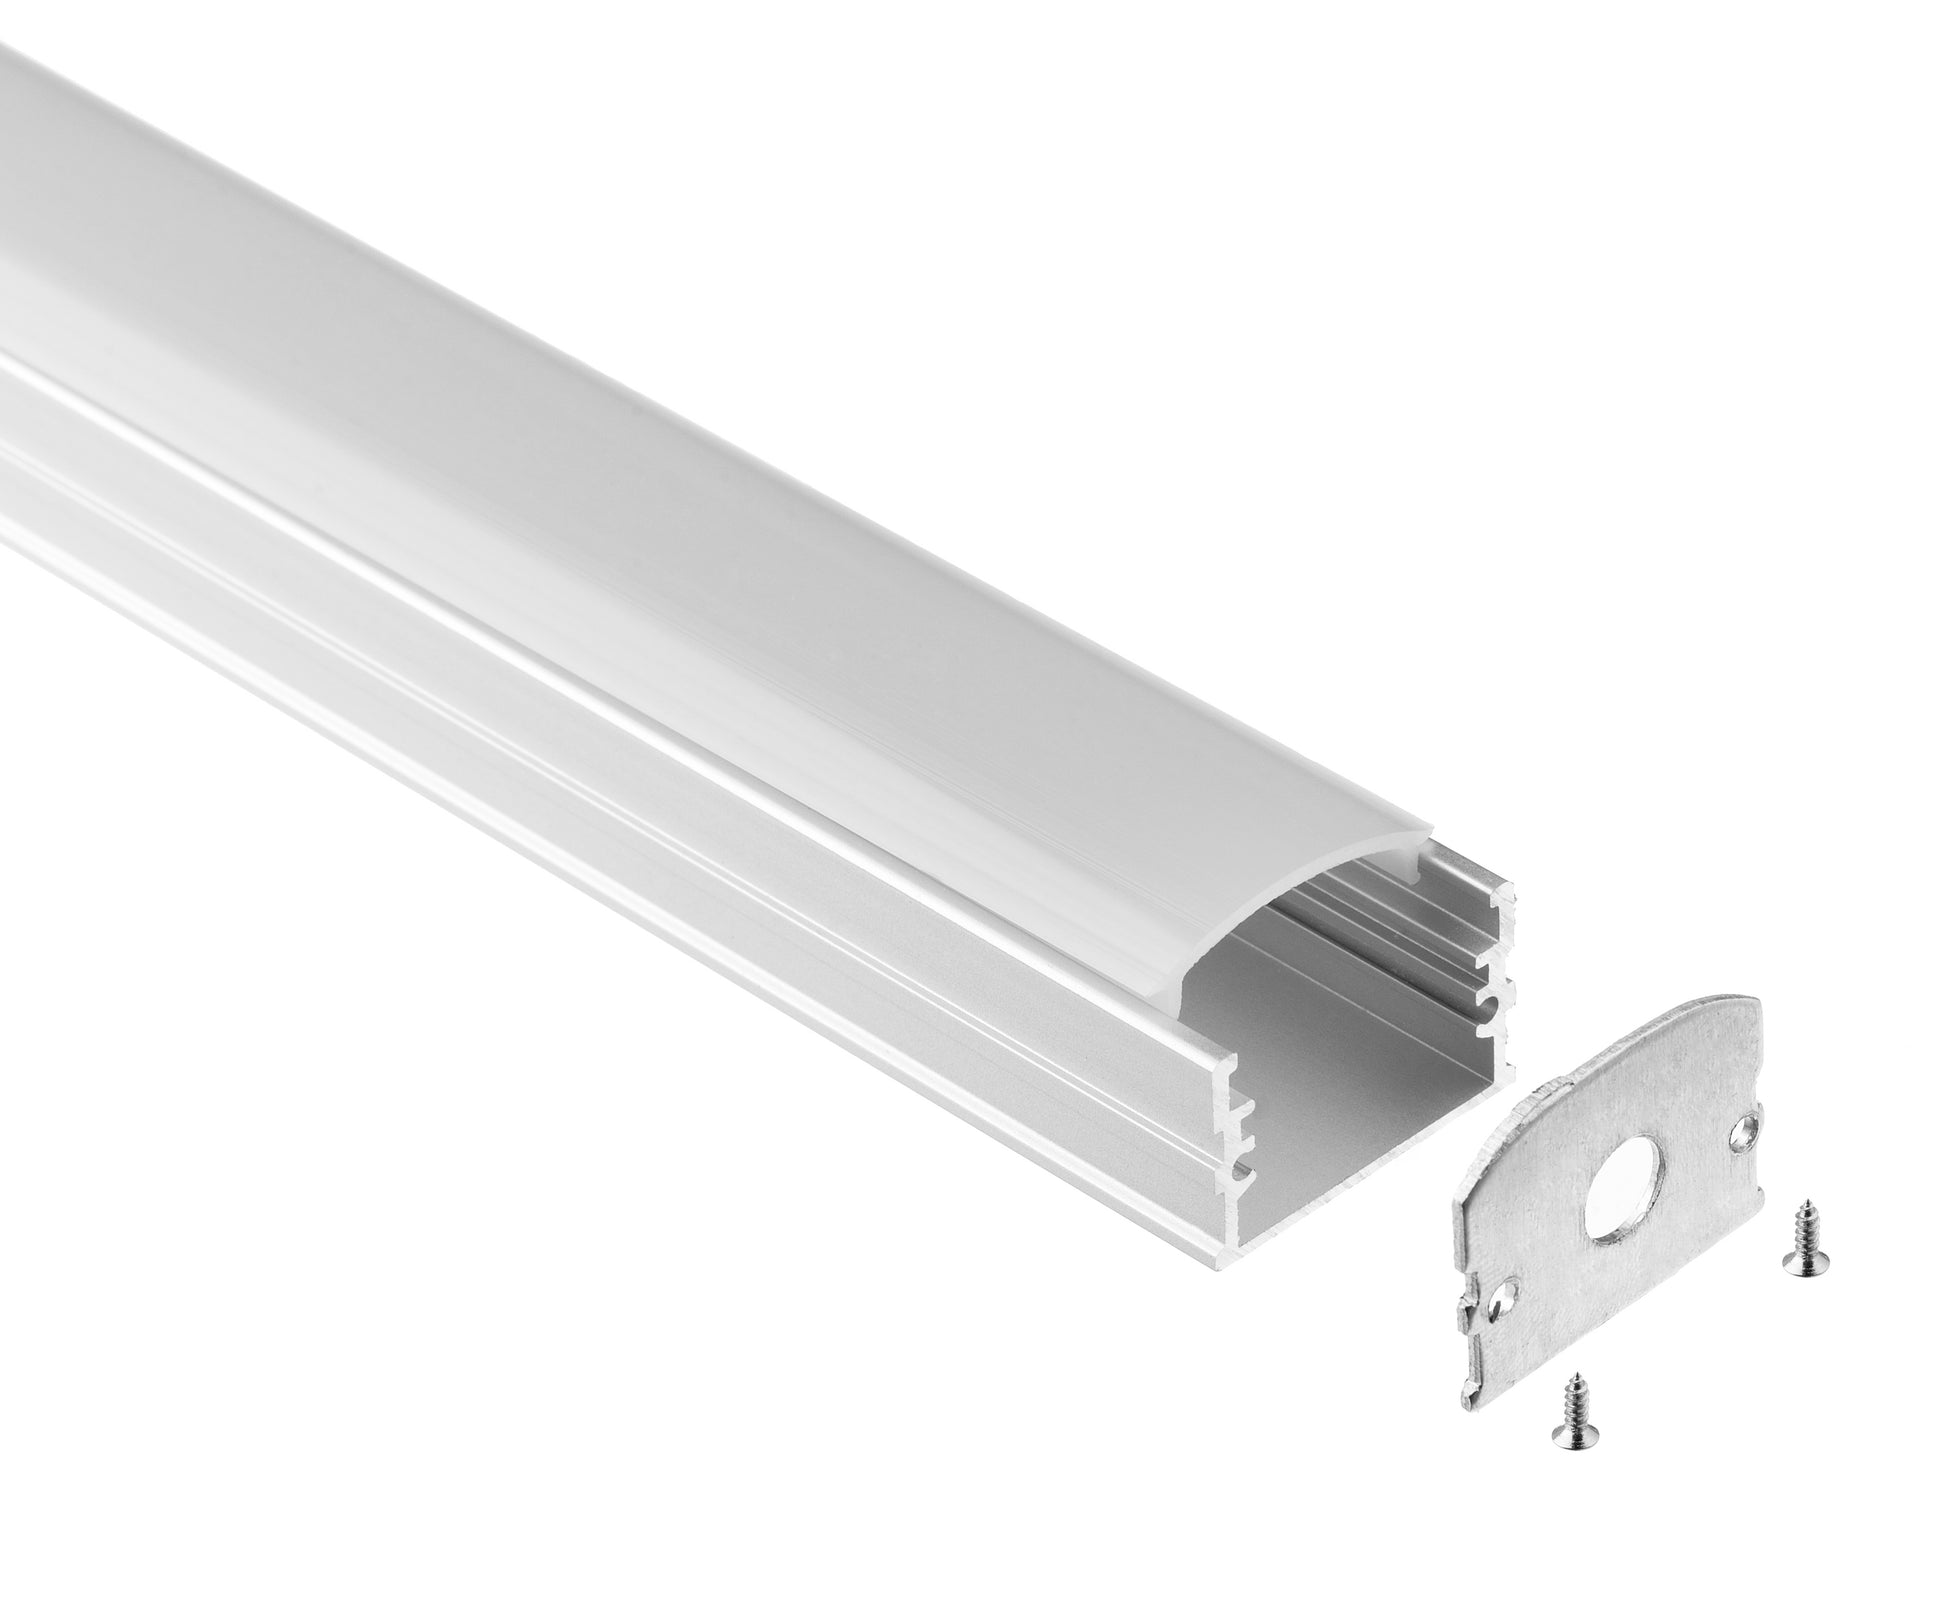 LED Profile Adjustable Aluminum